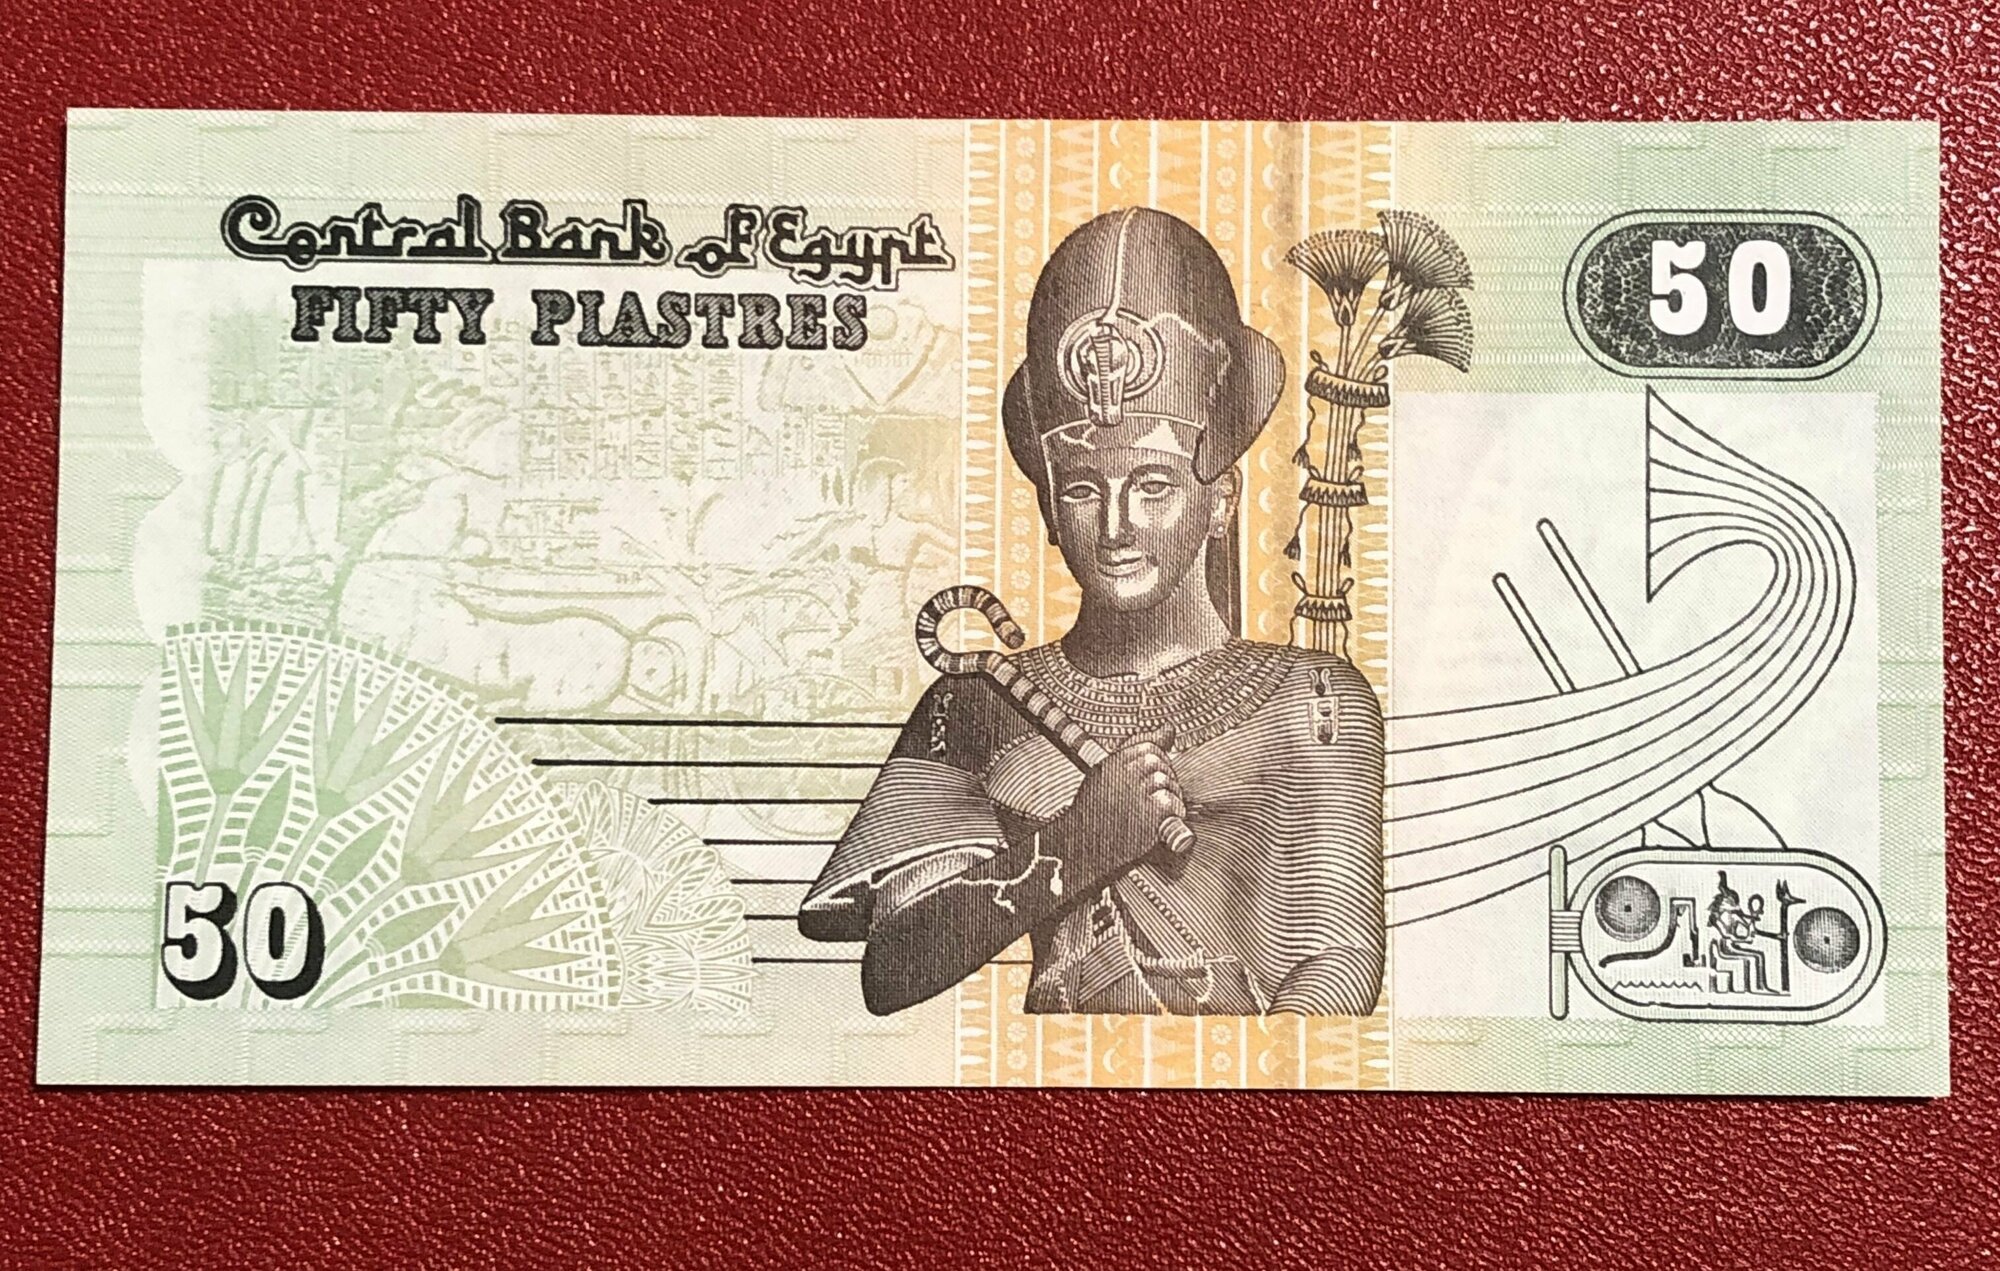 Банкнота 50 пиастров Египет 2017 UNC